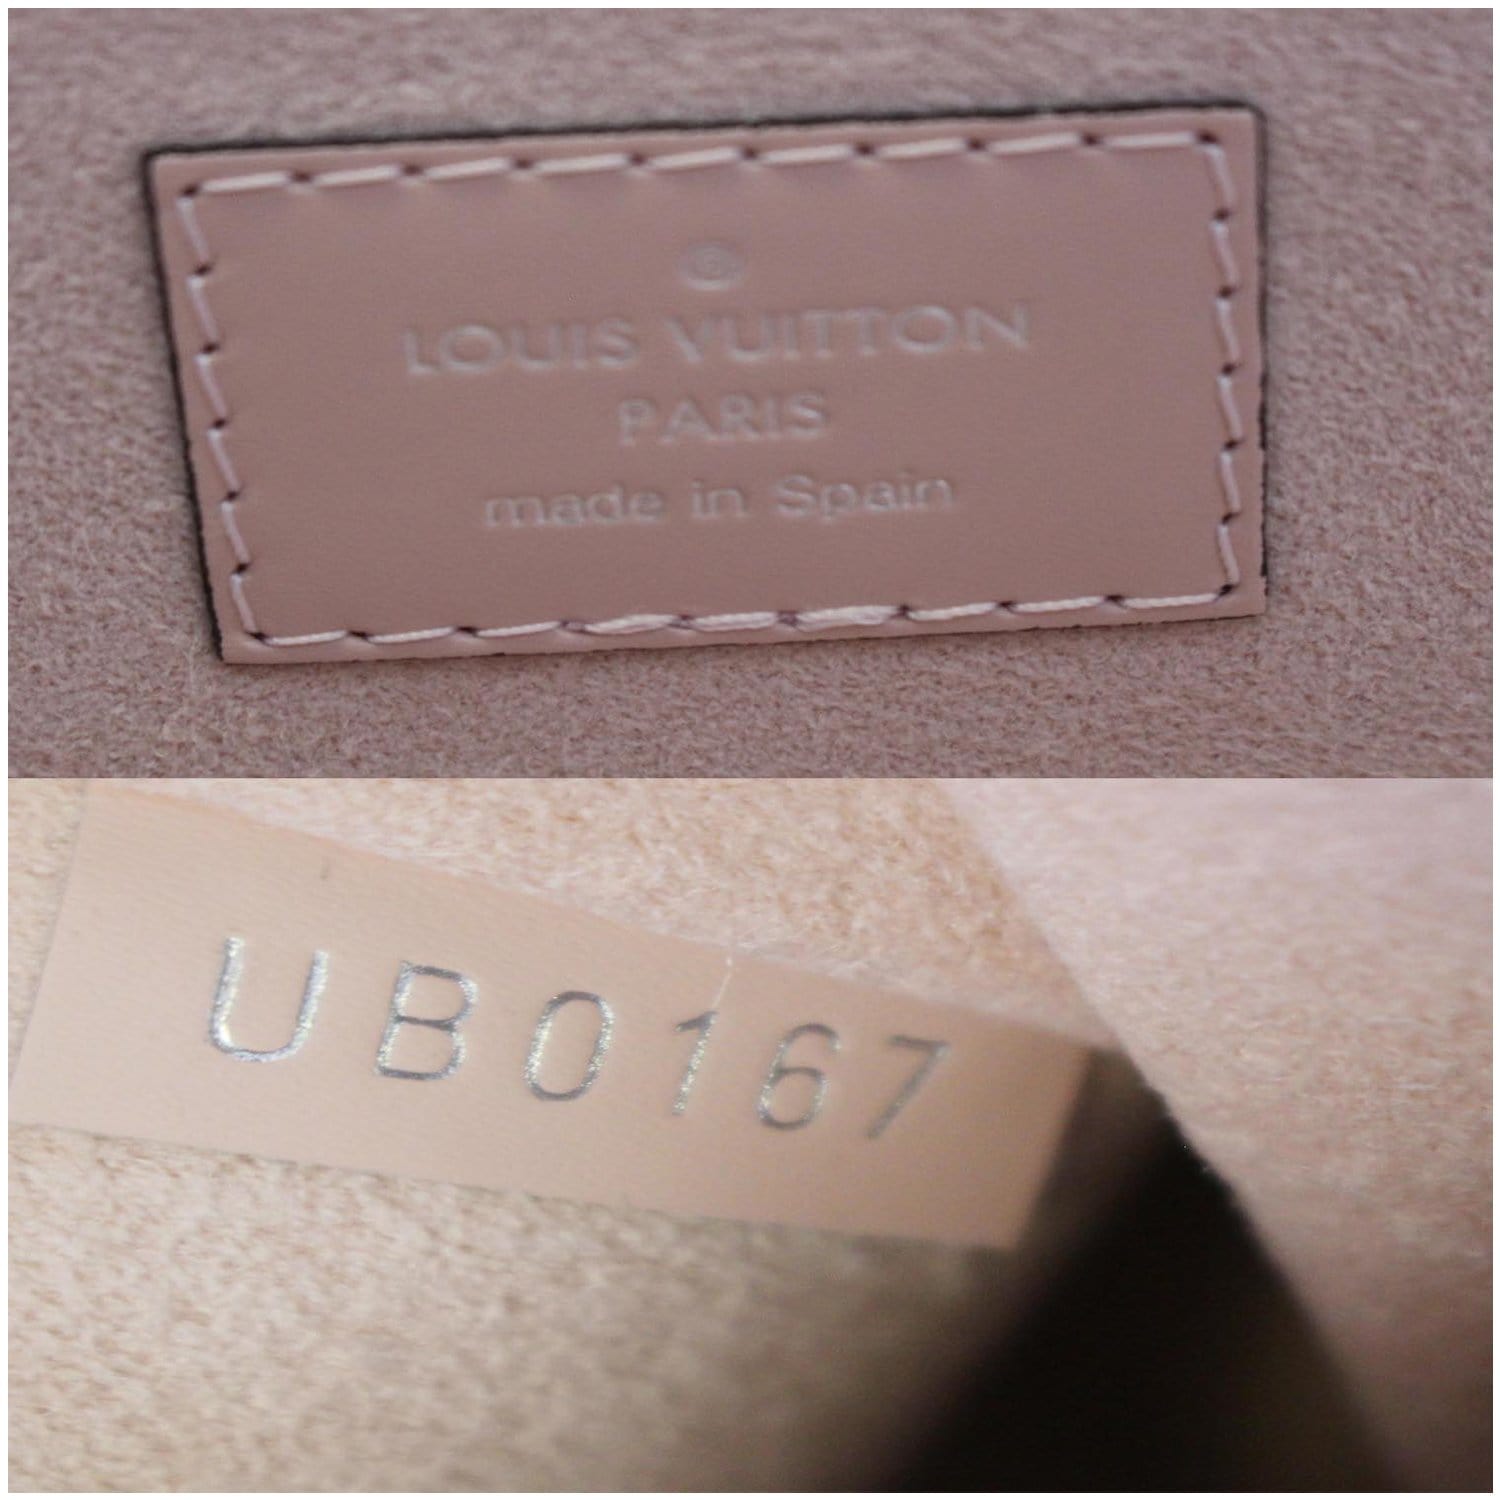 Louis Vuitton Rose Ballerine Epi Leather Neverfull MM Bag